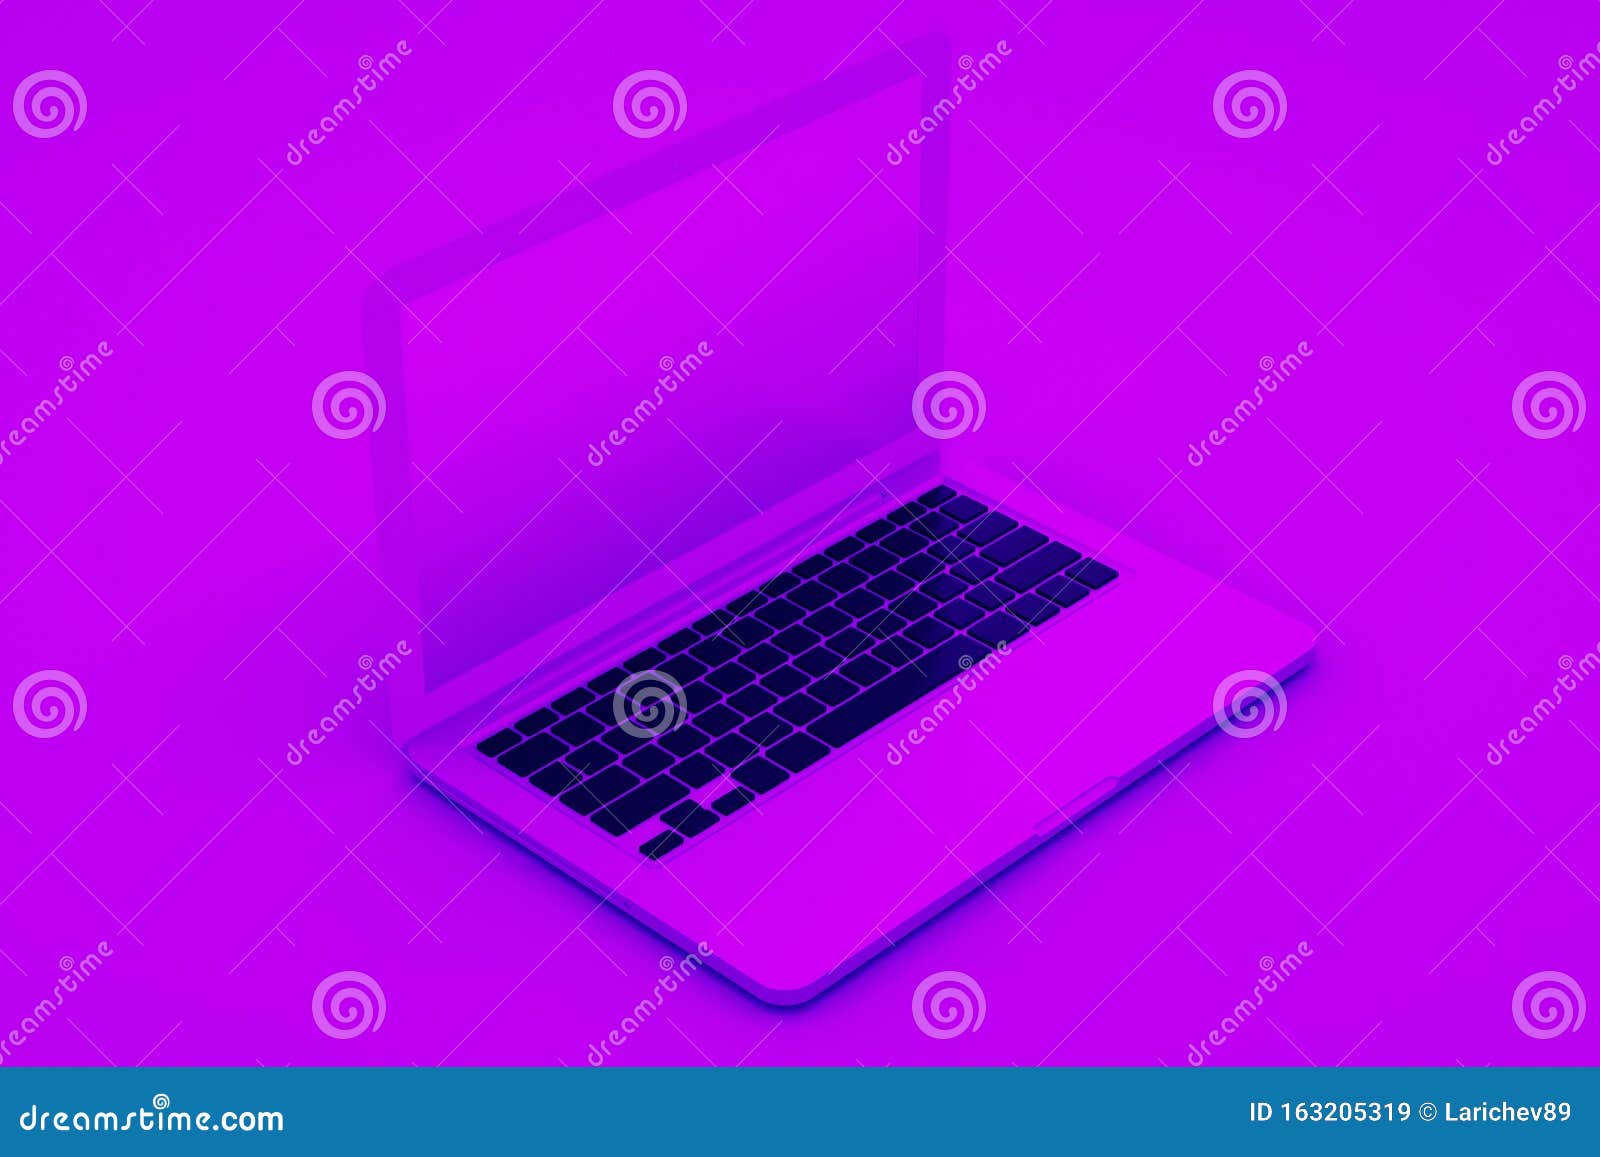 Máy tính xách tay trên nền tím 3D là một hình ảnh đẹp và sáng tạo. Với Laptop on Purple Background 3D Rendering, bạn sẽ được trải nghiệm một hình ảnh sống động, chân thật và đẹp mắt. Hình ảnh này có thể được sử dụng cho các dự án liên quan đến thiết kế hoặc trình chiếu của bạn. 